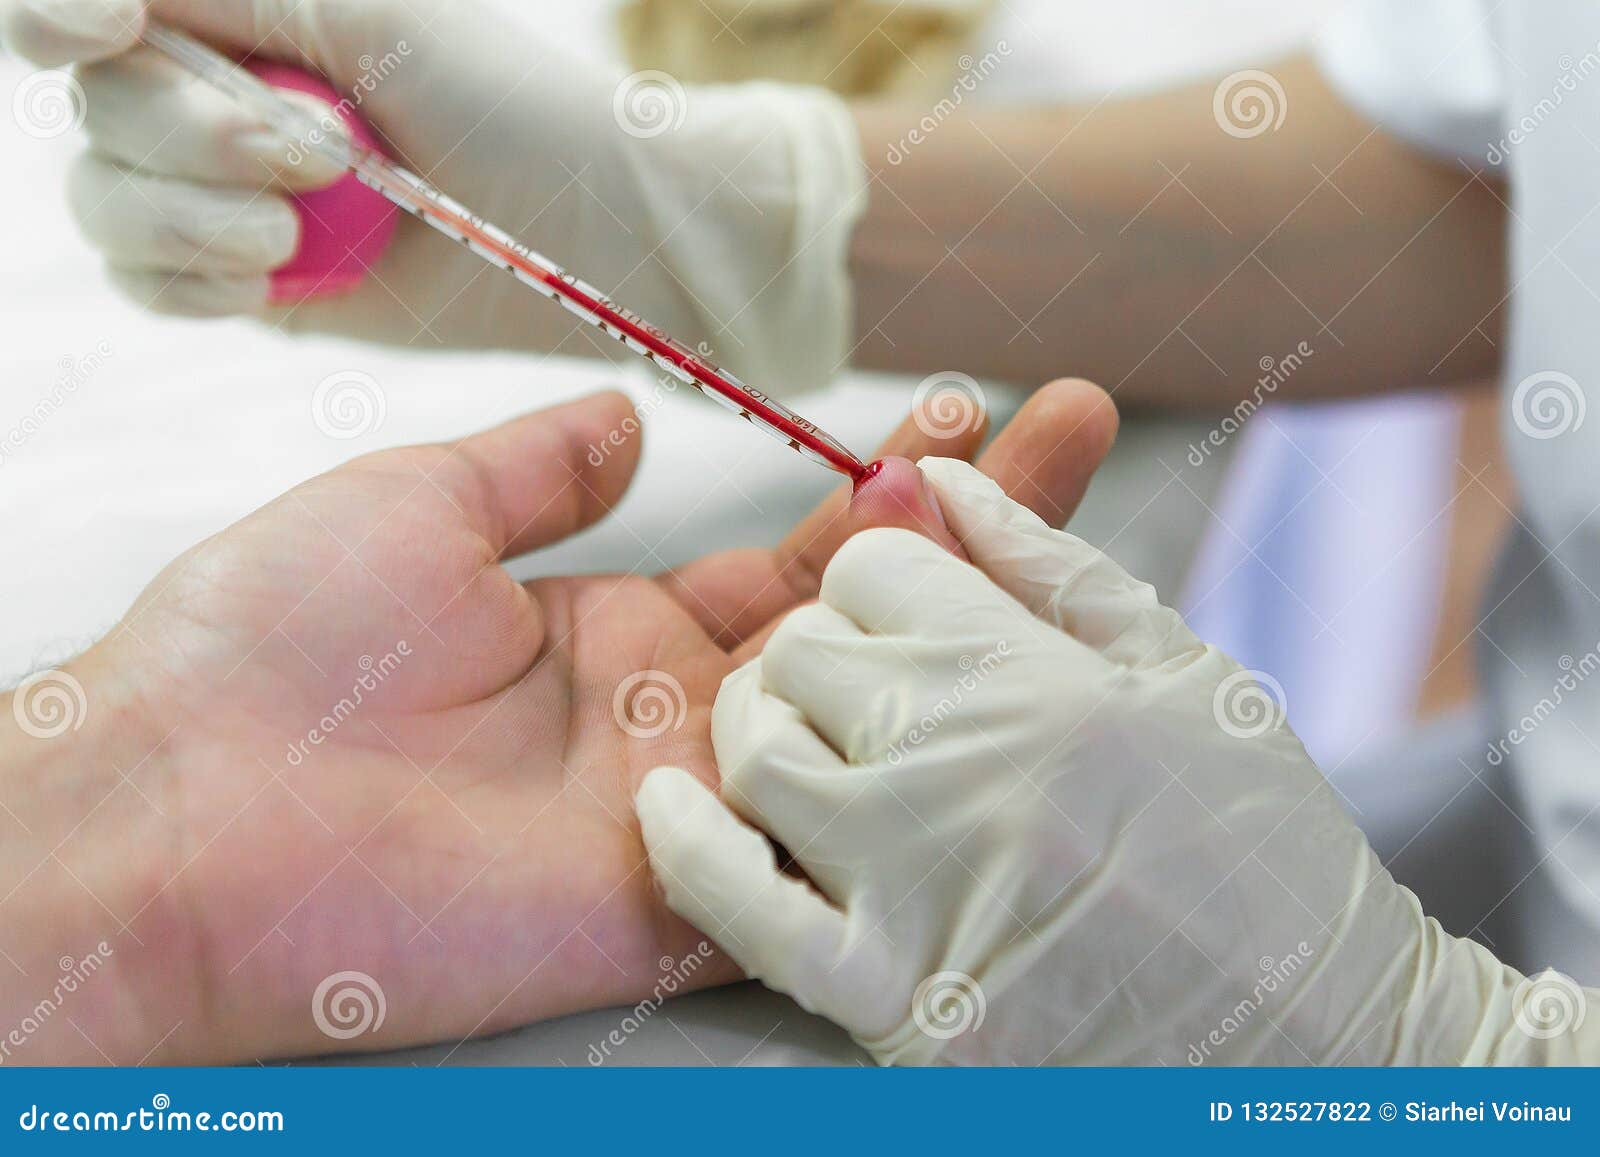 Кровь из пальца показывает наркотики the tor browser bundle should вход на гидру